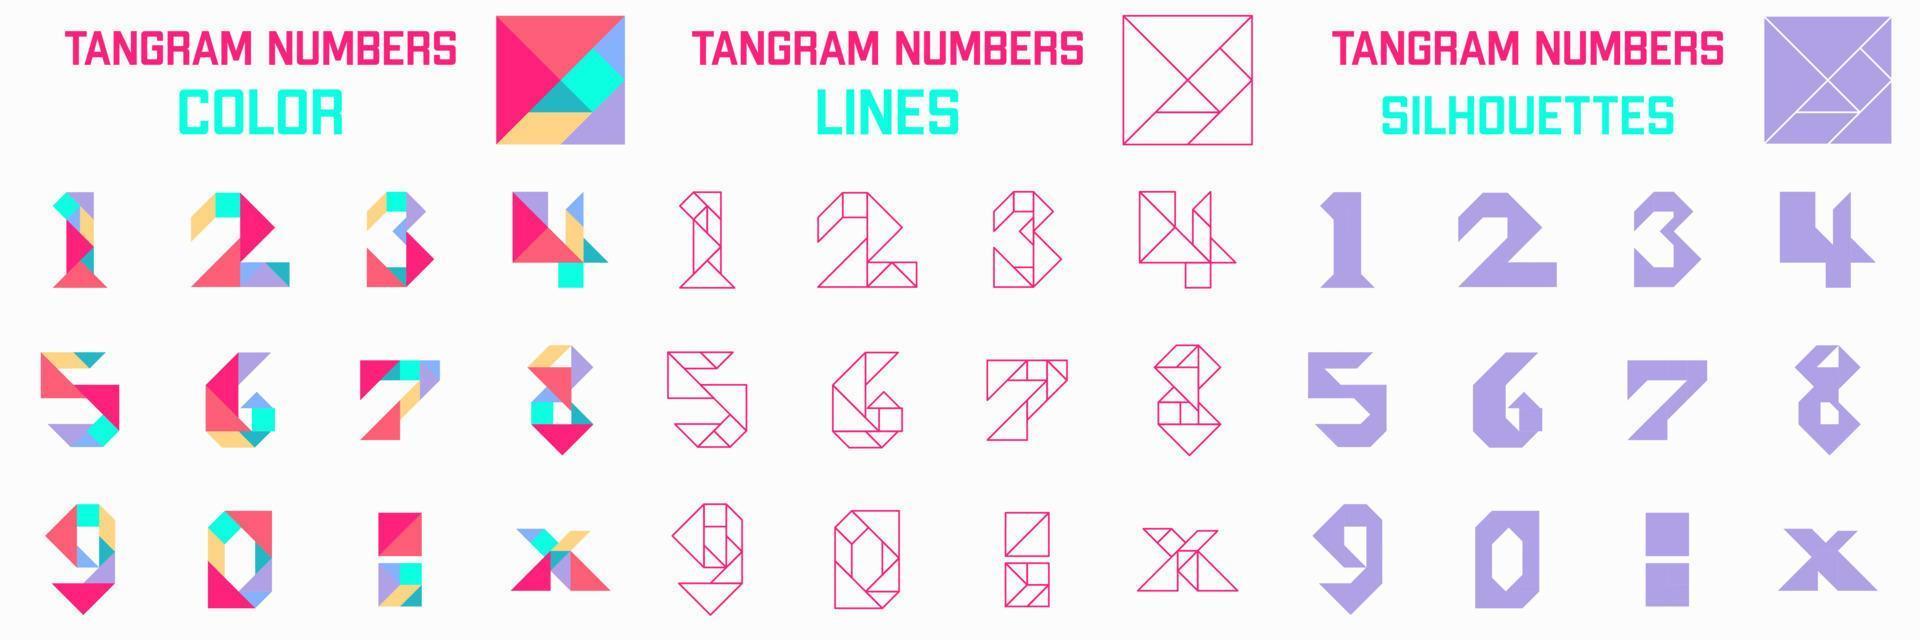 tangram puzzle gioco. schemi con diverso numeri. gioco per bambini. tangram colore, sagome e Linee. vettore